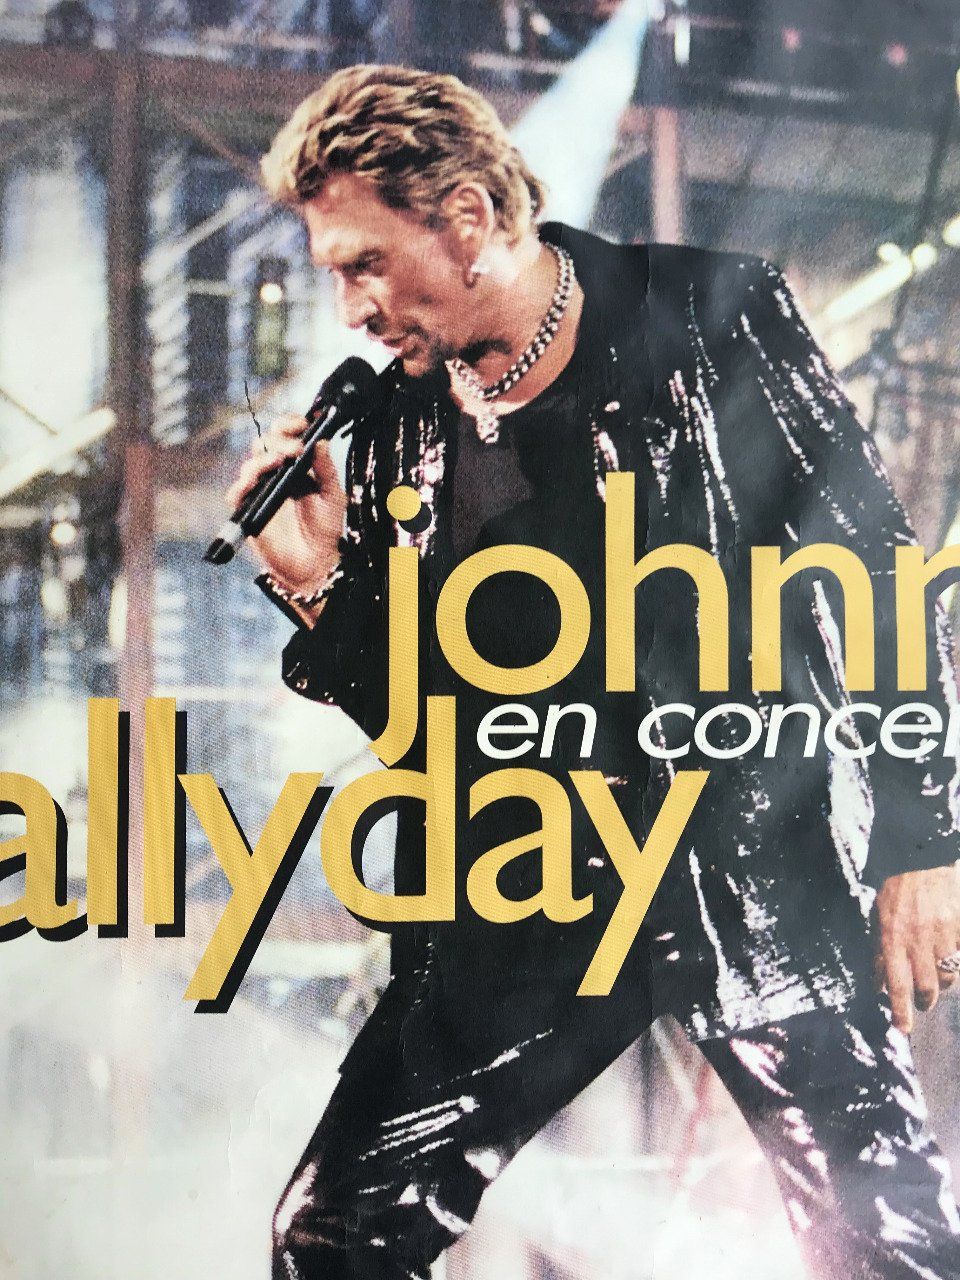 JOHNNY HALLYDAY, Affiche originale du concert Allume le feu au